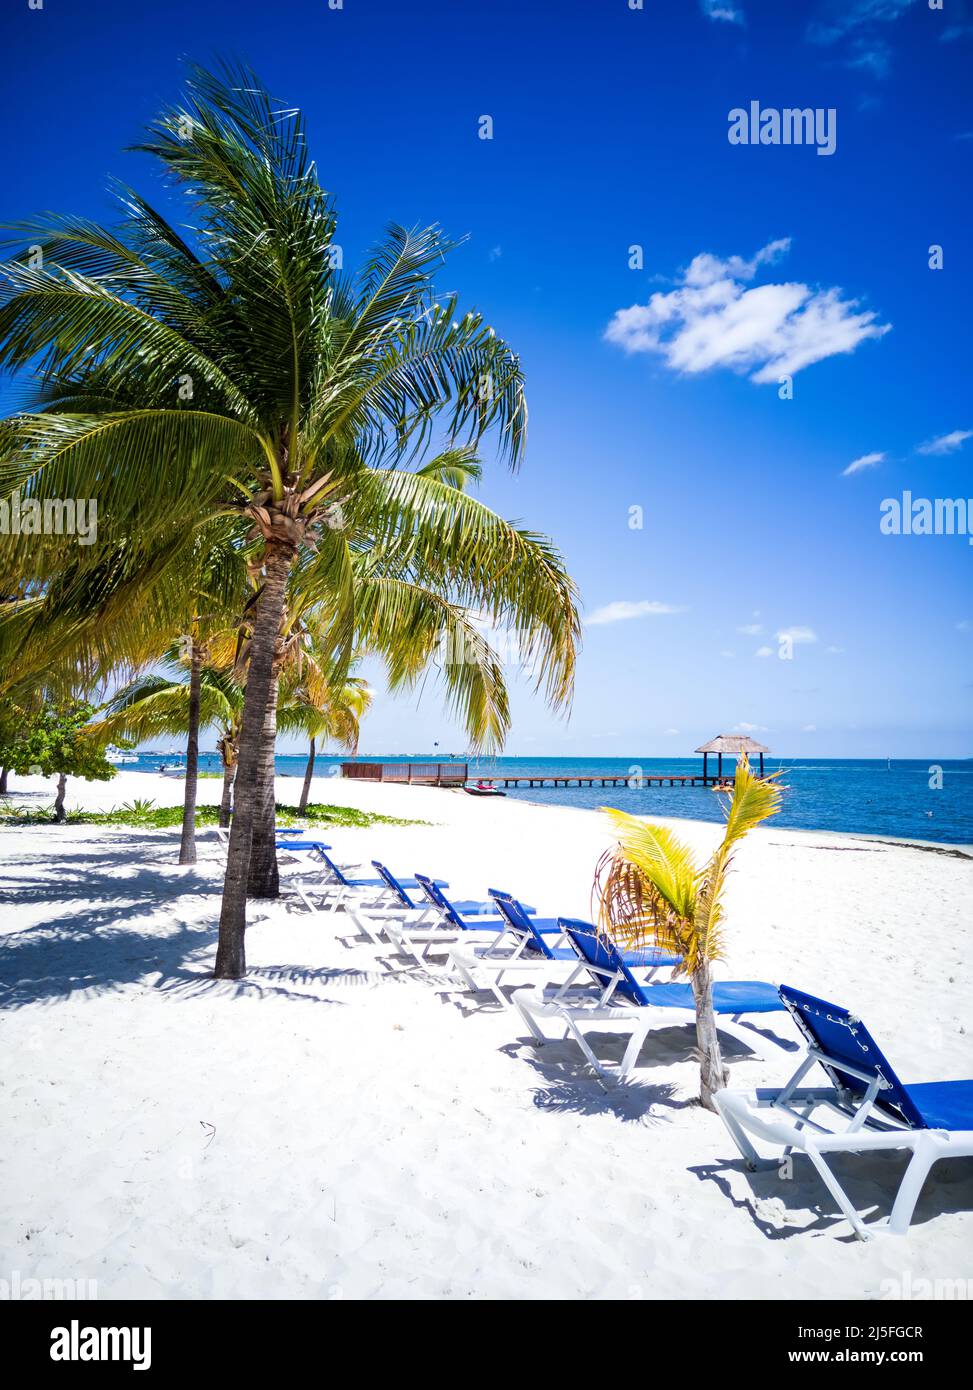 Paesaggio tropicale con palme da cocco sulla spiaggia dei caraibi, Cancun, Penisola dello Yucatan in Messico. Foto Stock